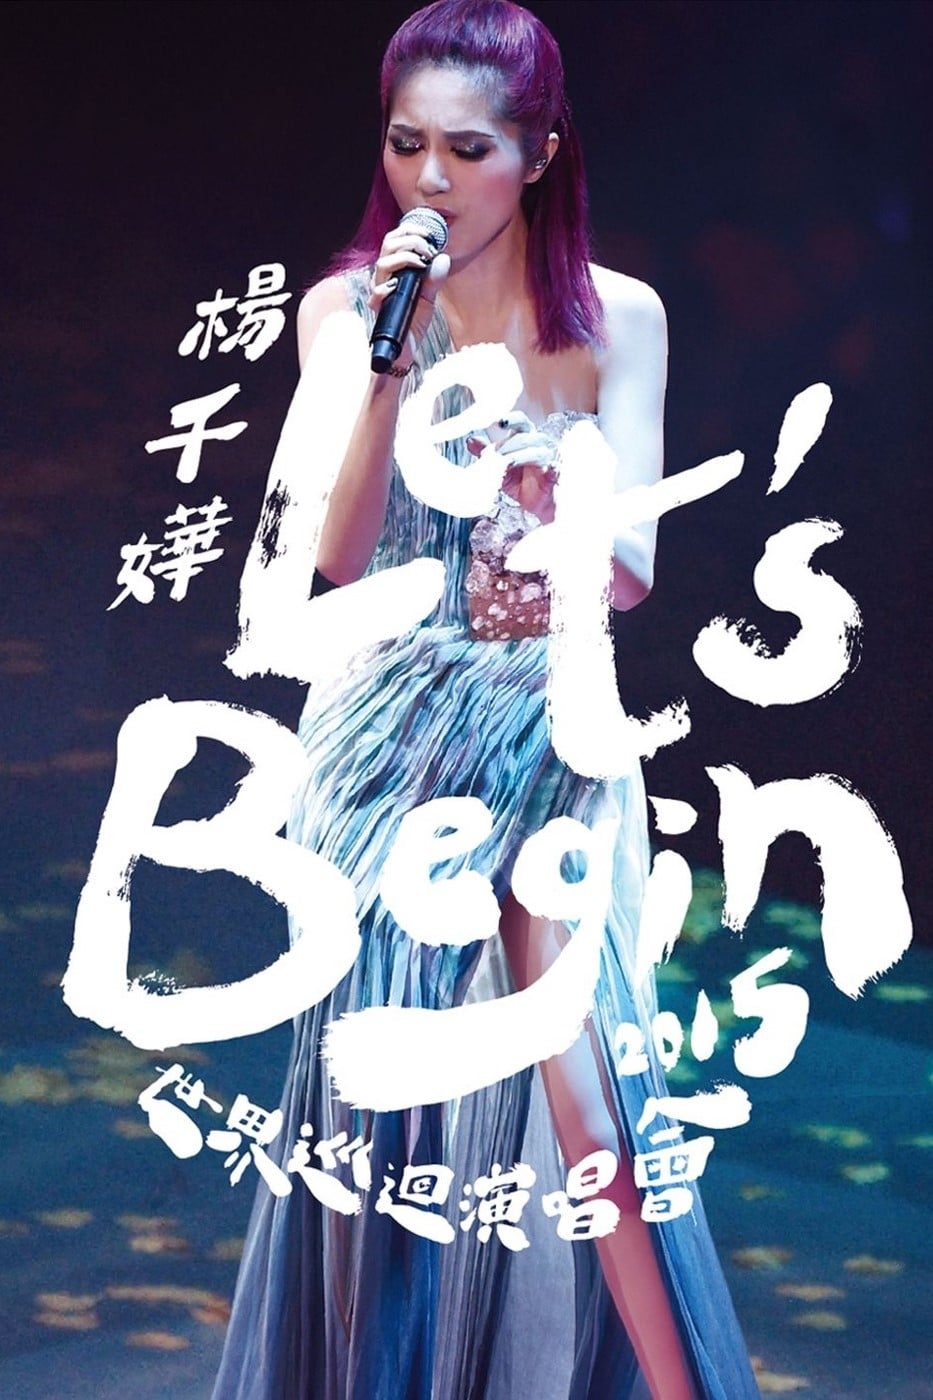 杨千嬅 Let’s Begin 2015 世界巡回演唱会香港紅館站